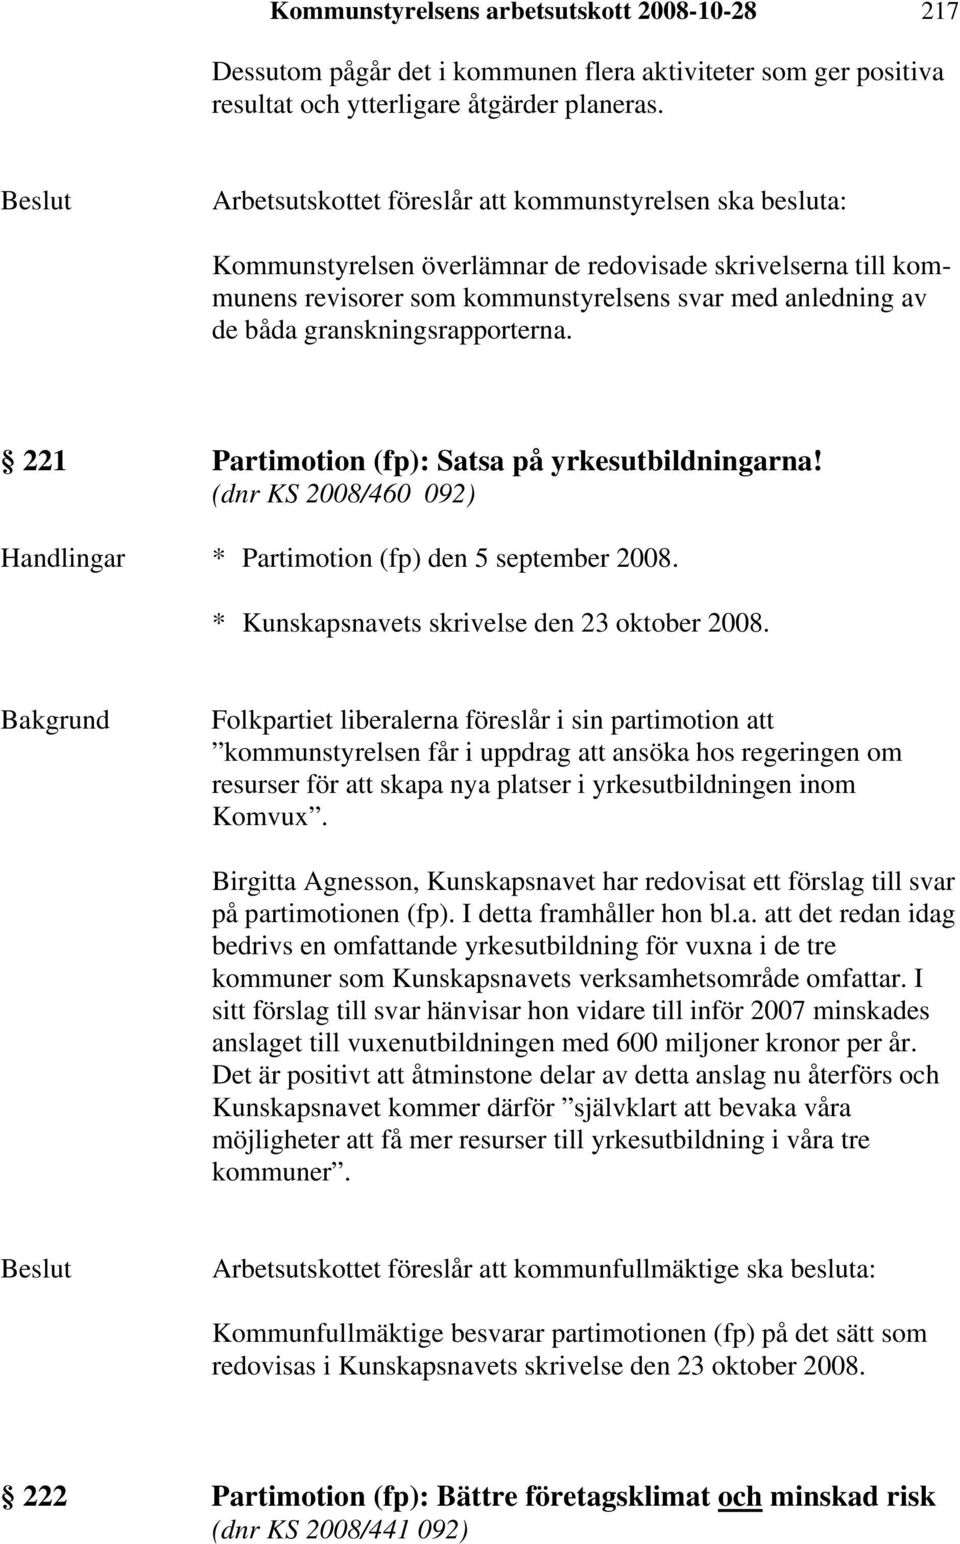 granskningsrapporterna. 221 Partimotion (fp): Satsa på yrkesutbildningarna! (dnr KS 2008/460 092) Handlingar * Partimotion (fp) den 5 september 2008. * Kunskapsnavets skrivelse den 23 oktober 2008.